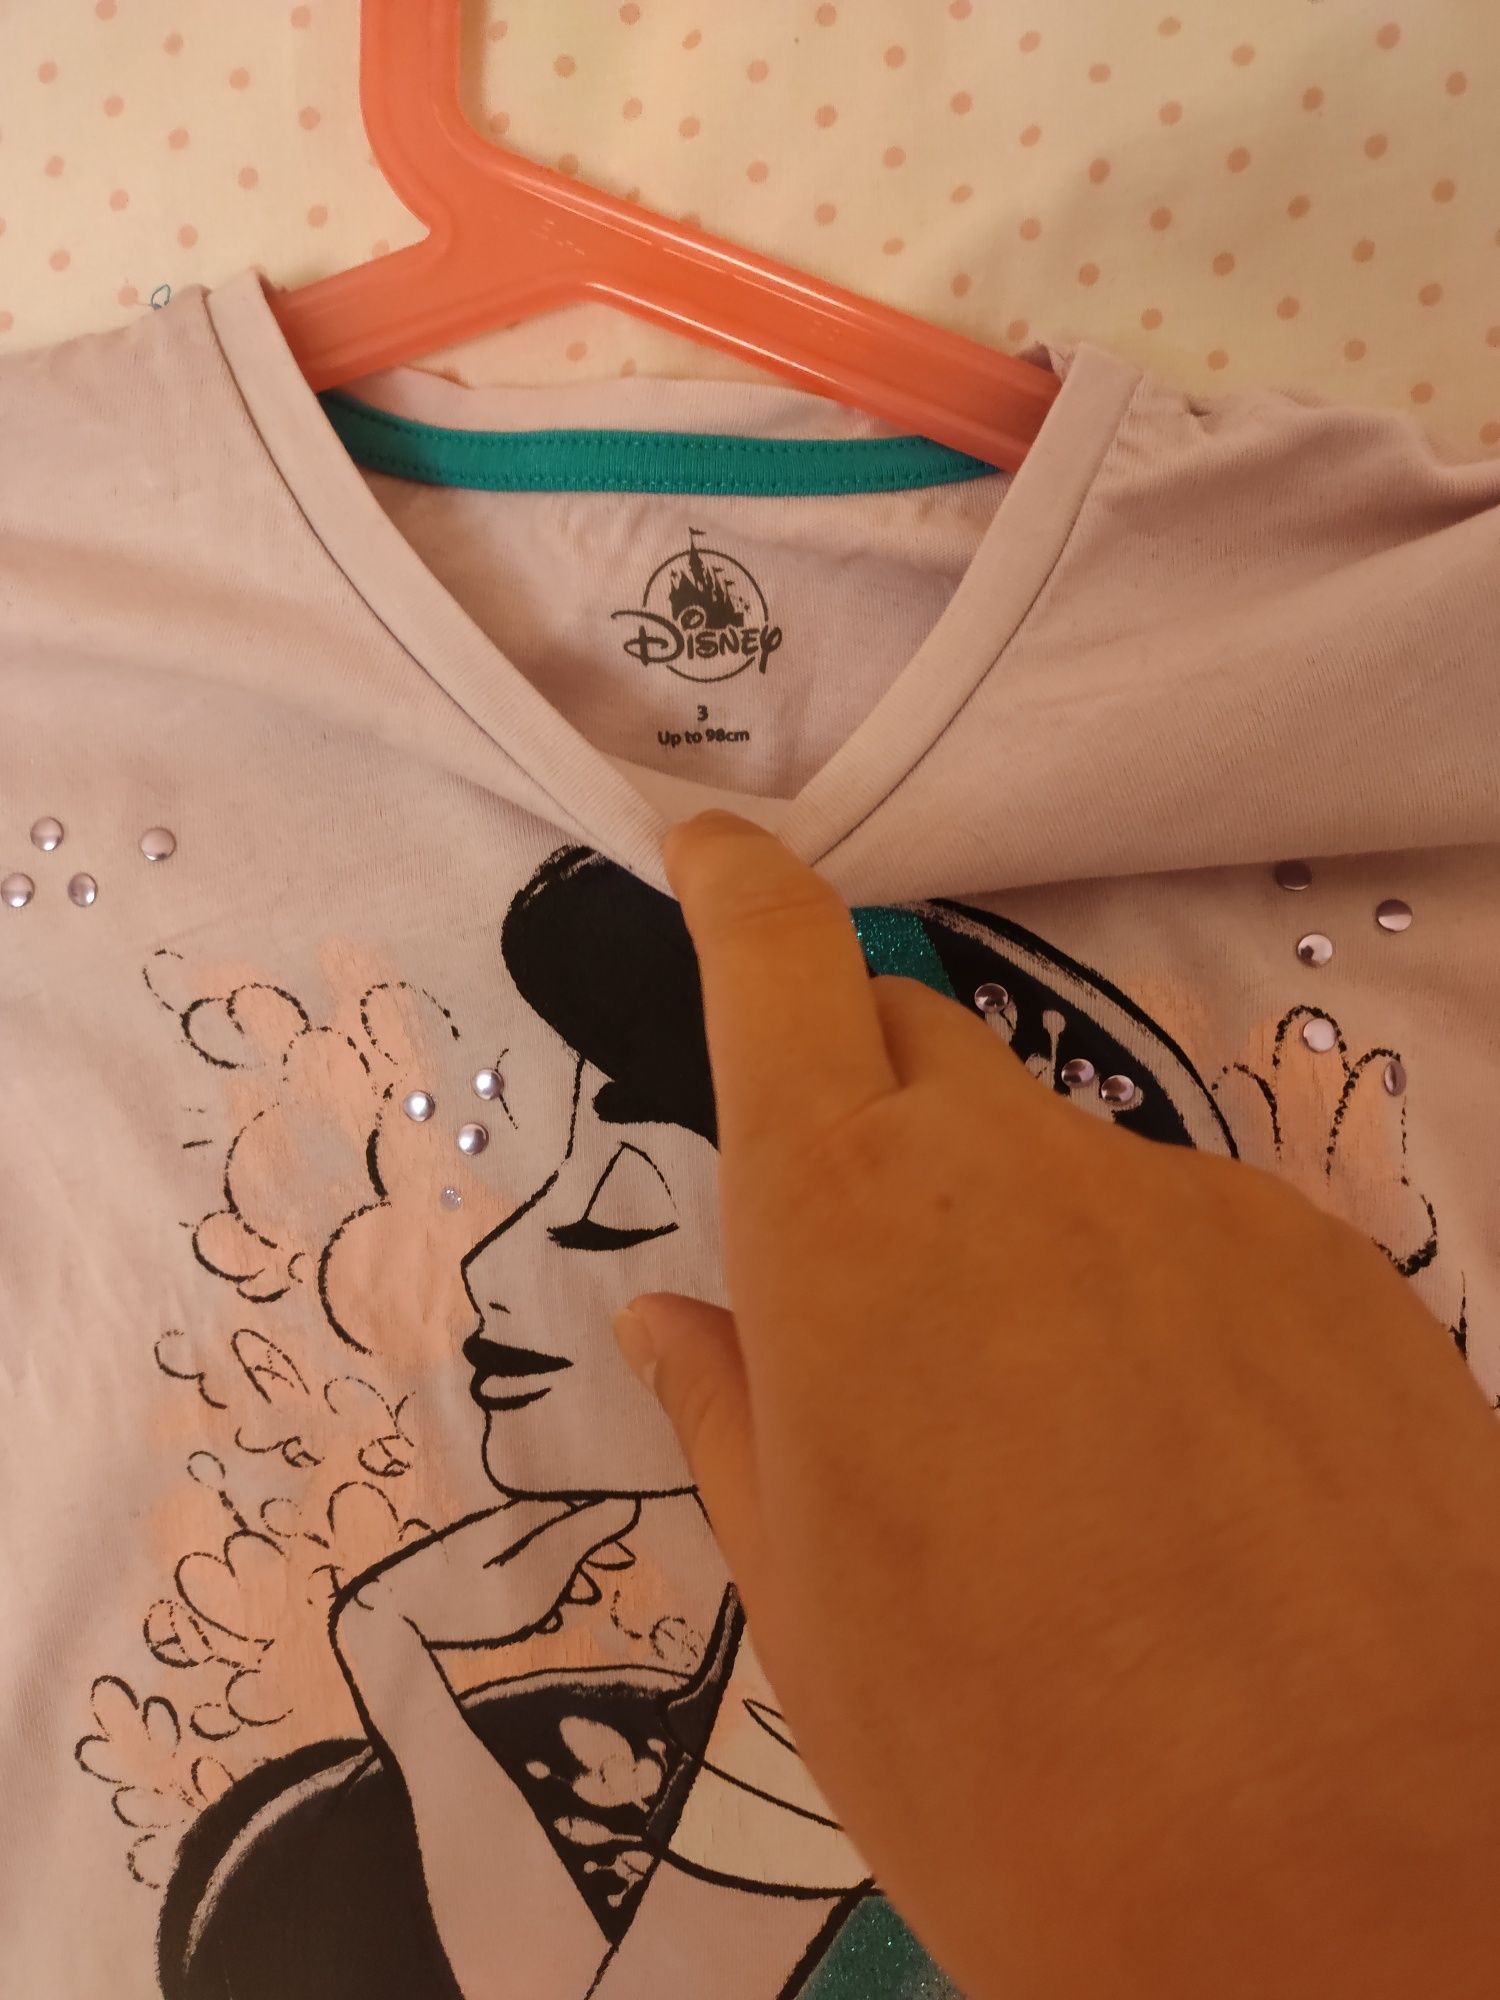 T'shirt oficial Disney Store com o tema Jasmine